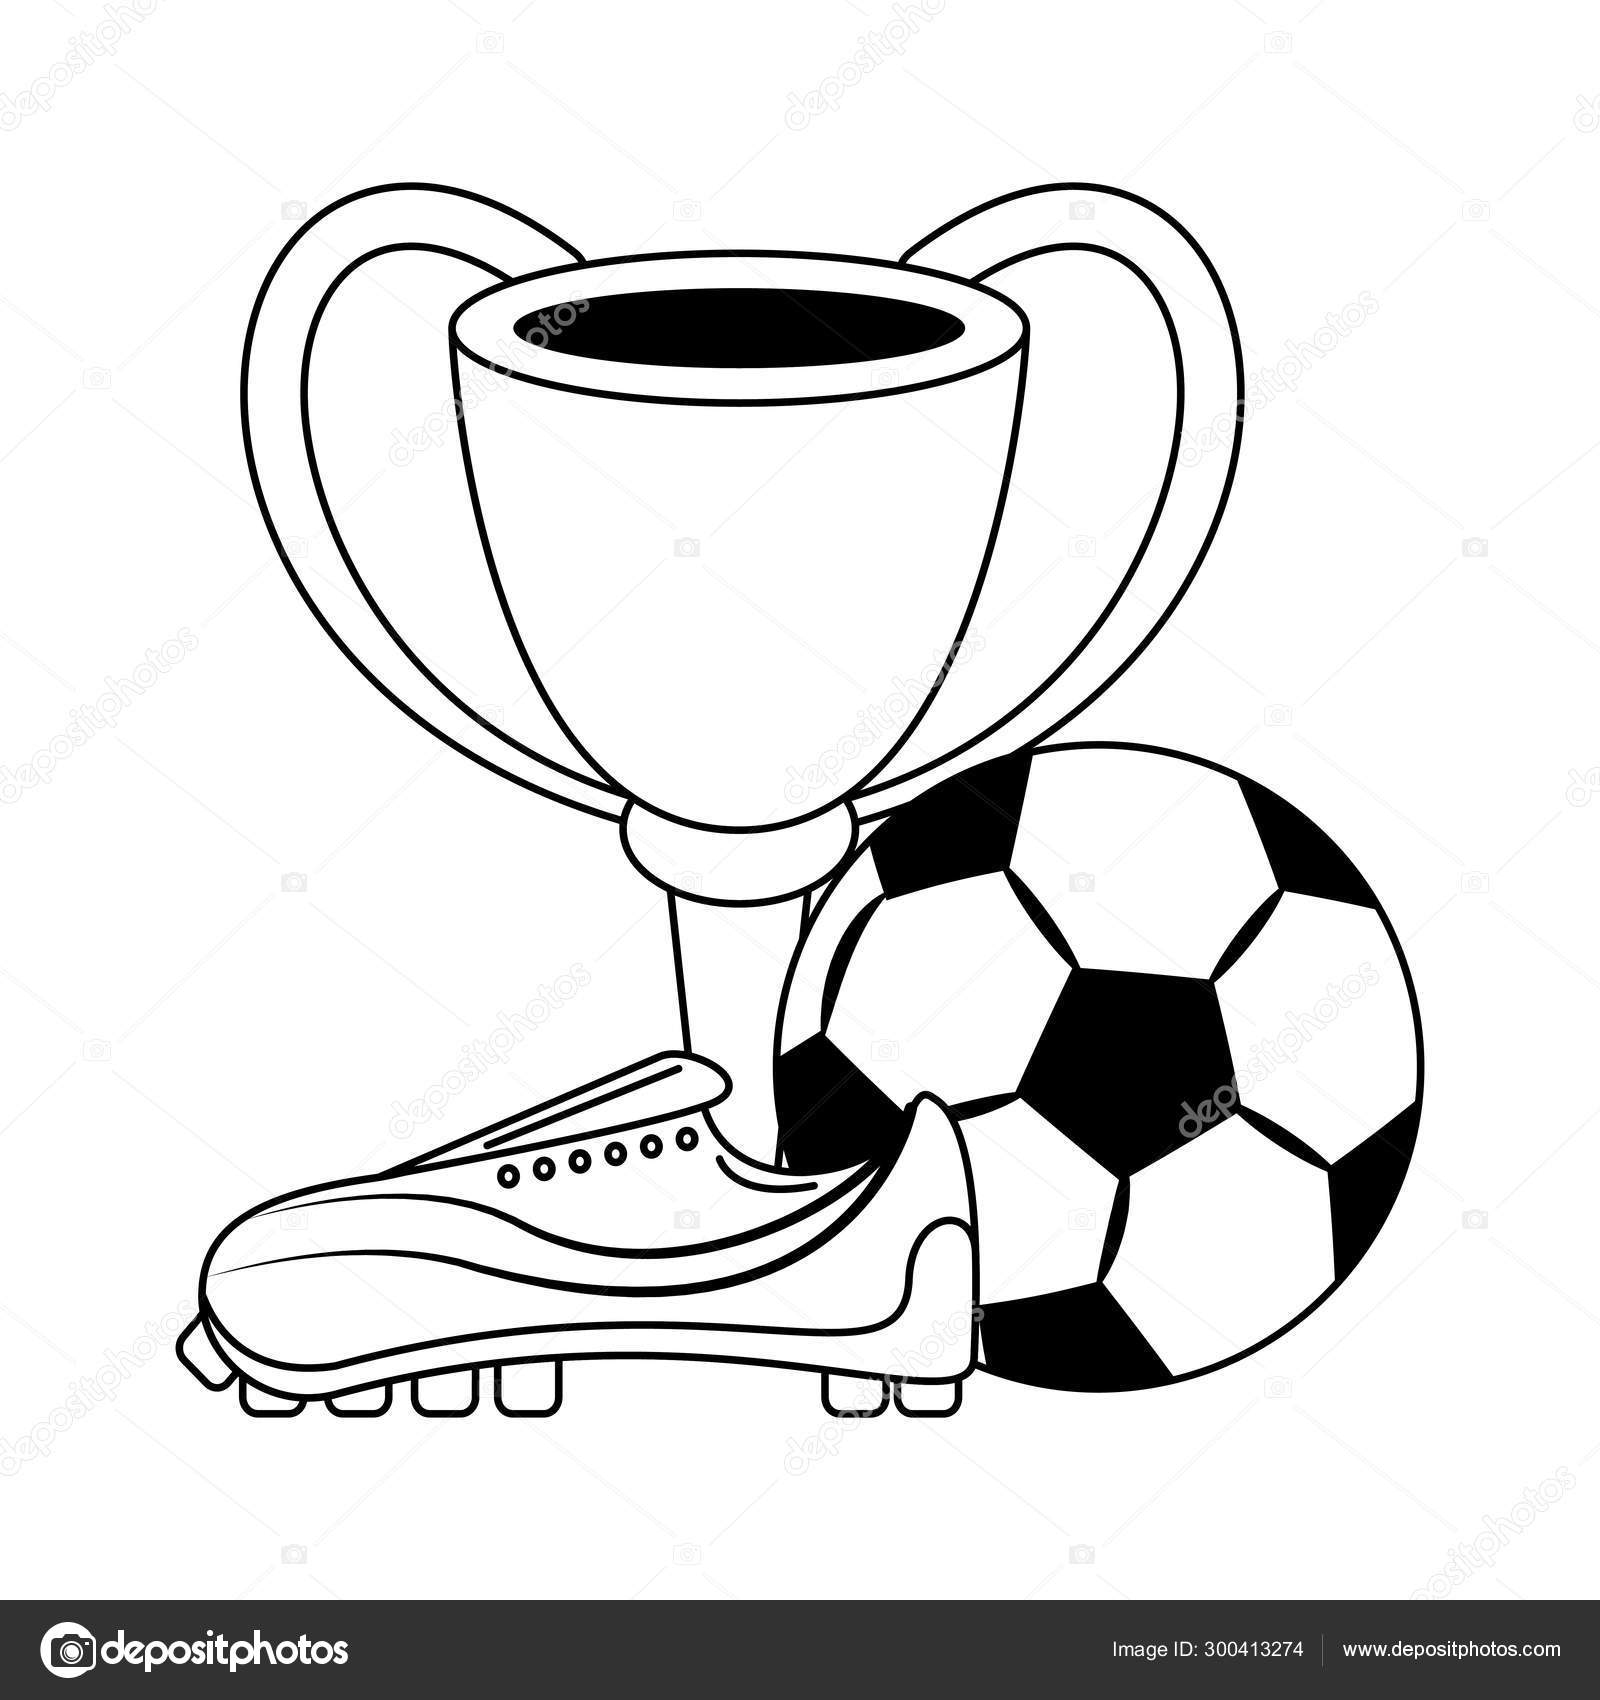 Futebol futebol esporte jogo desenhos animados em preto e branco imagem  vetorial de jemastock© 300394192